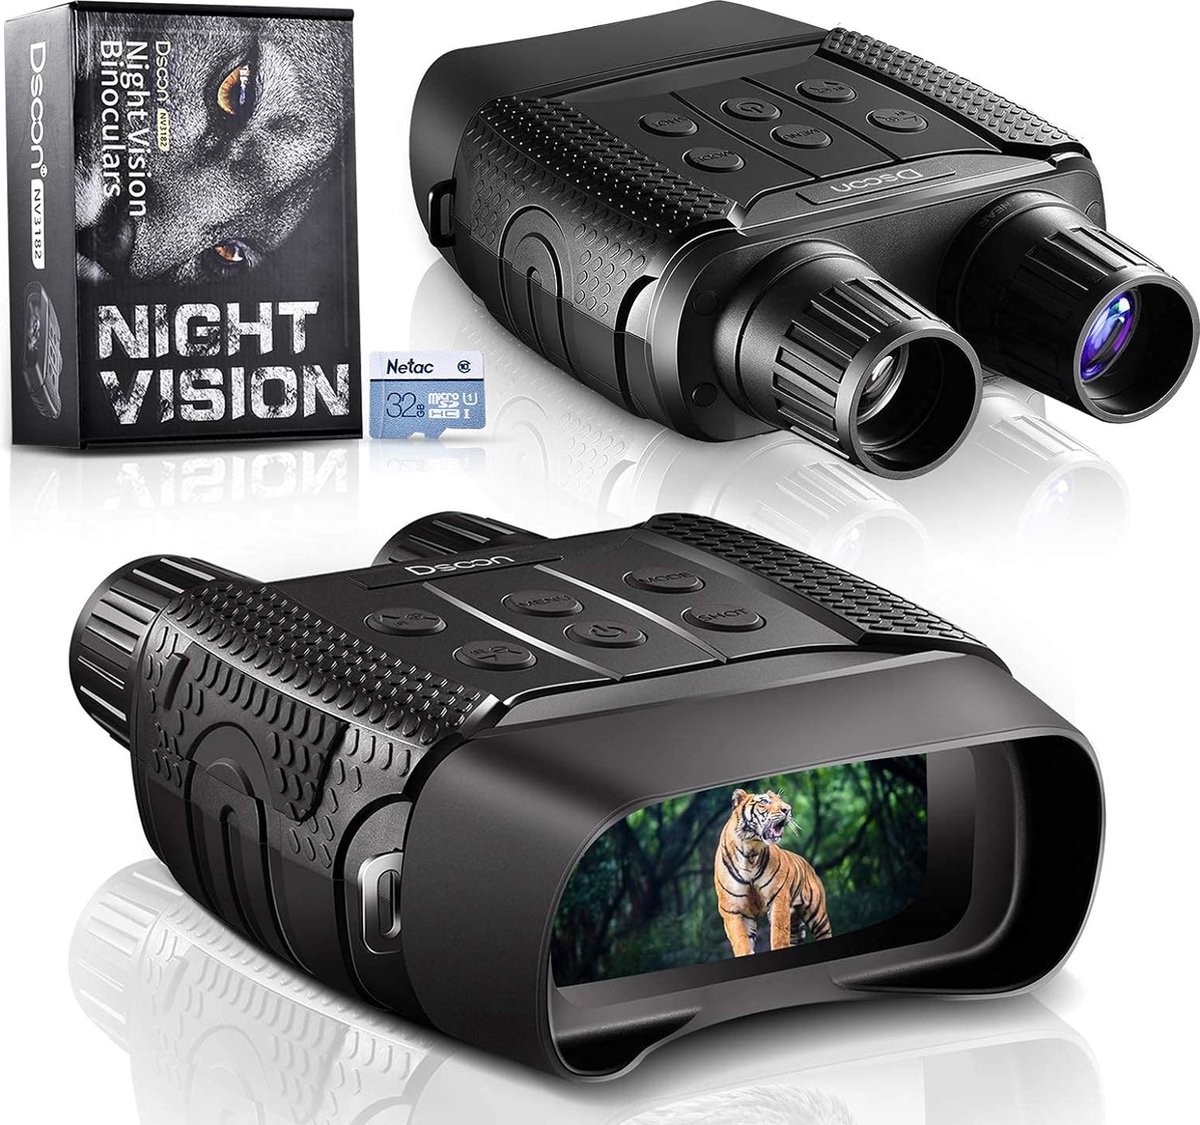 Nachtkijker/Binoculair - Hoofdmontage - 4X digitale zoom - Full HD - 1080p met geluid